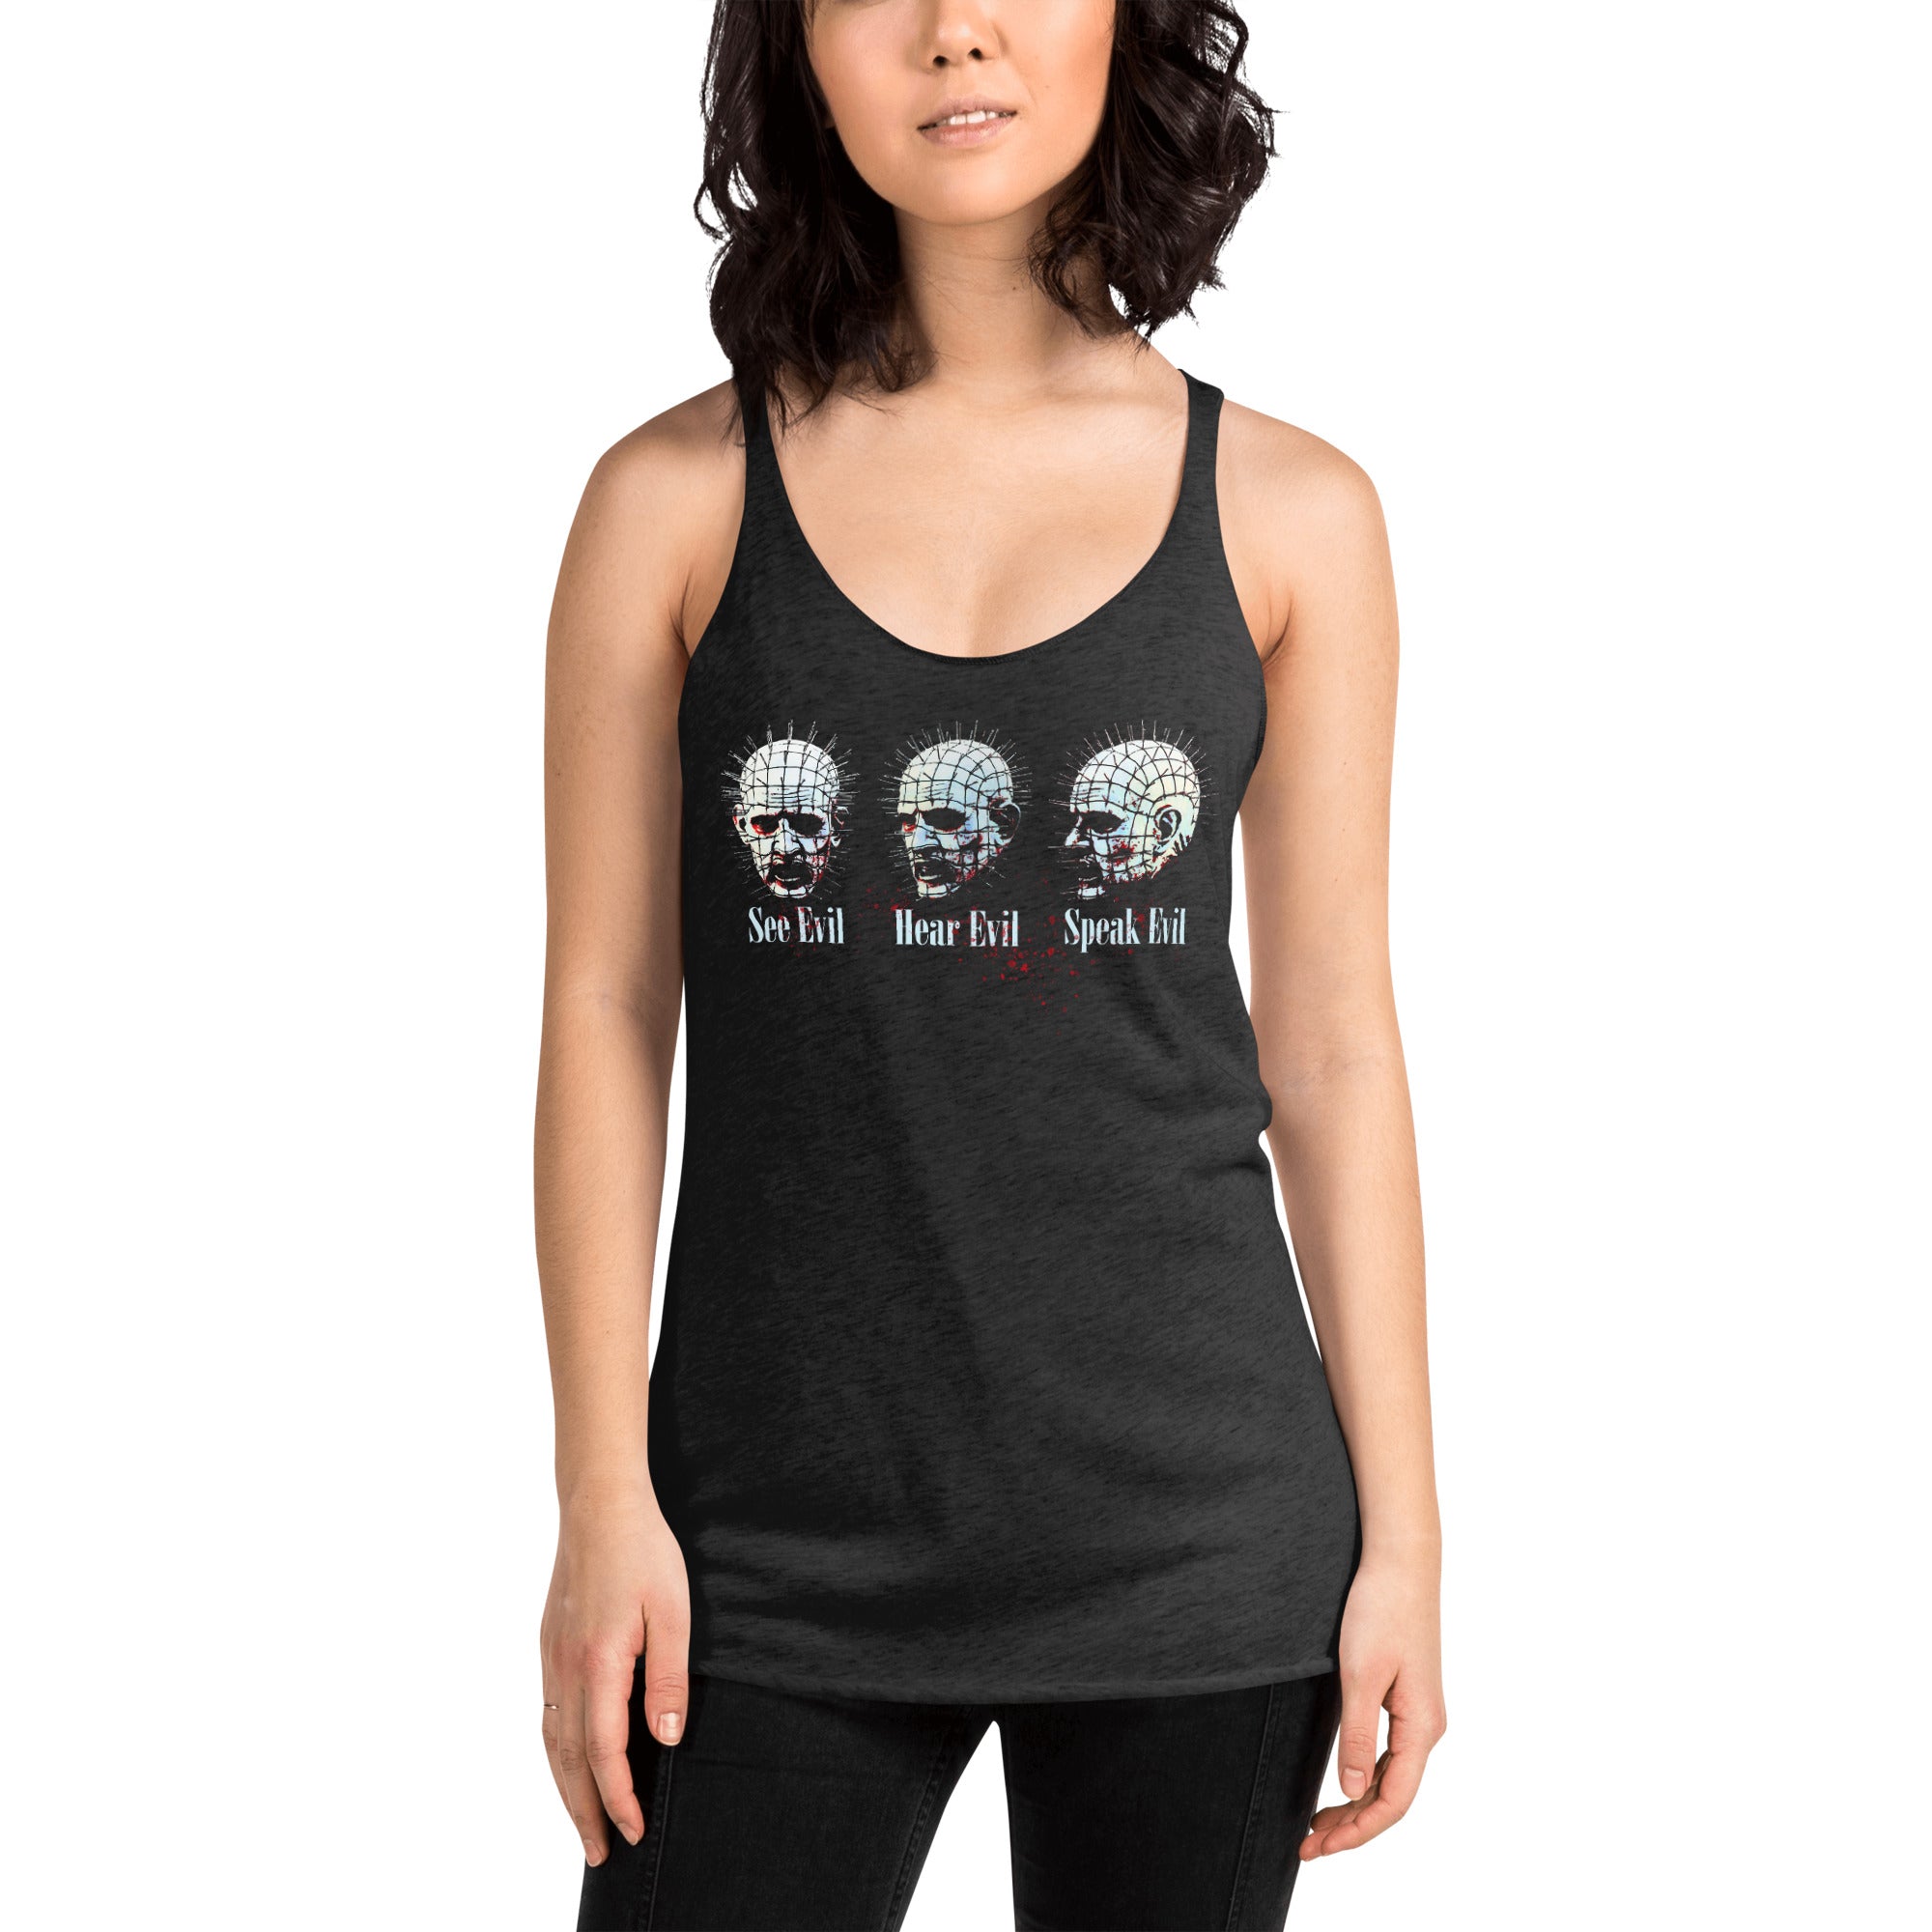 See Evil, Hear Evil, Speak Evil Horror Women's Racerback Tank Top Shirt - Edge of Life Designs